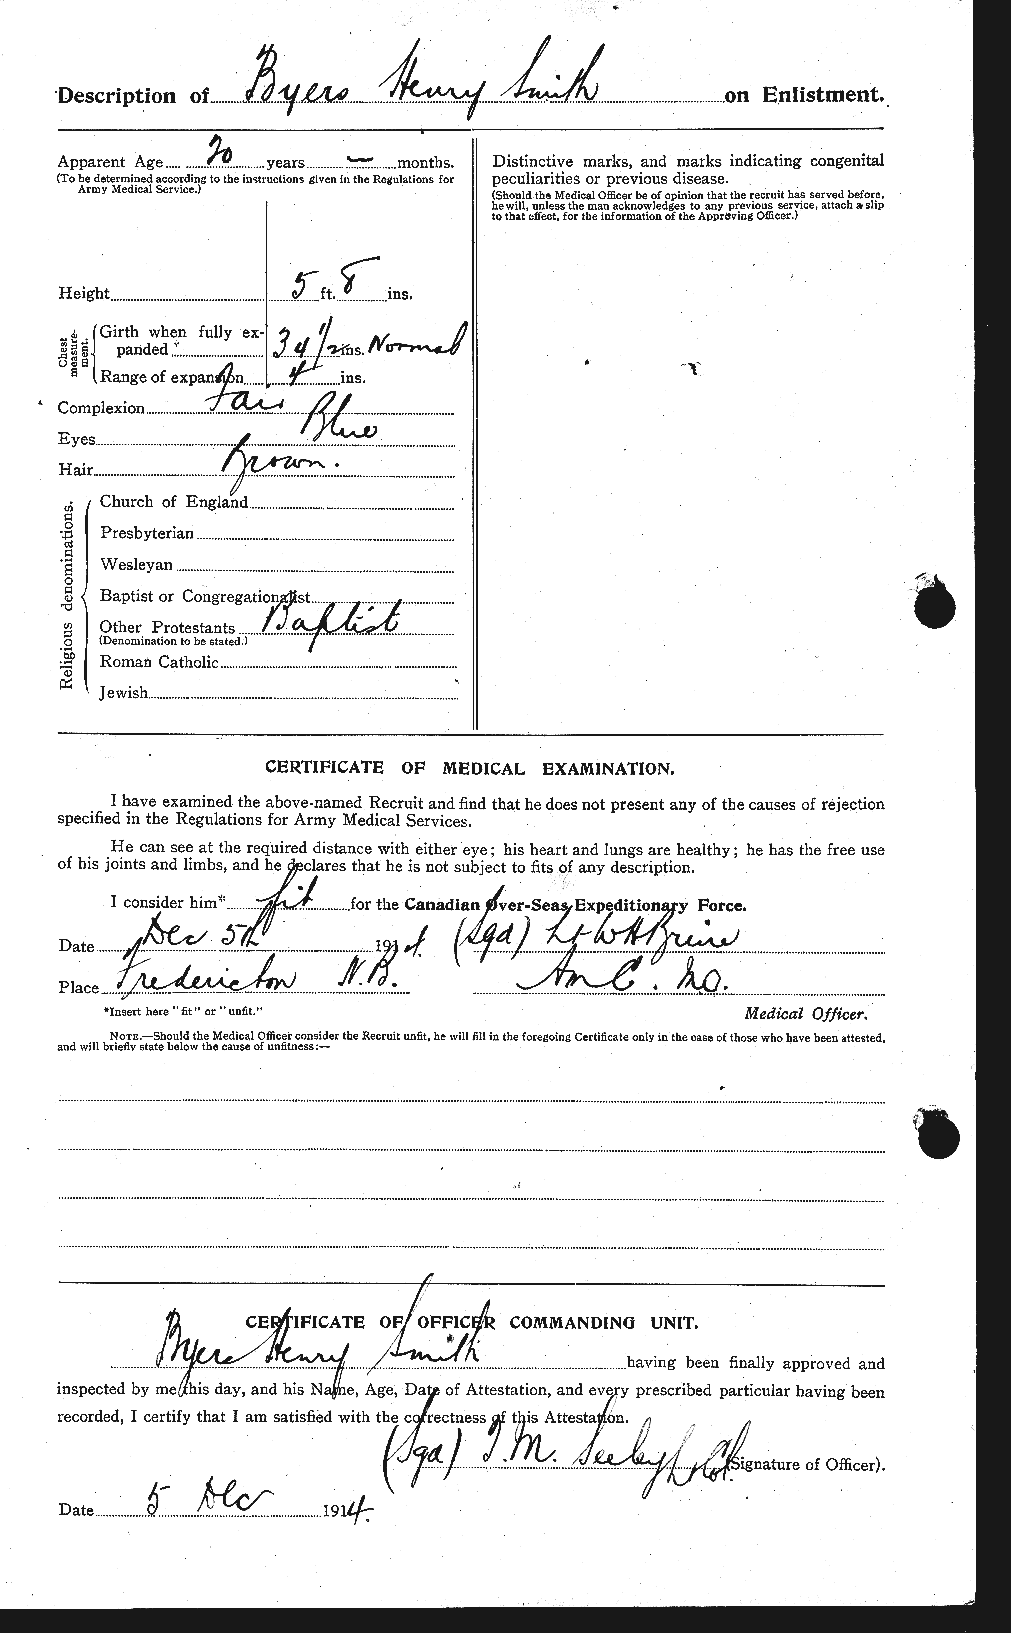 Dossiers du Personnel de la Première Guerre mondiale - CEC 100823b